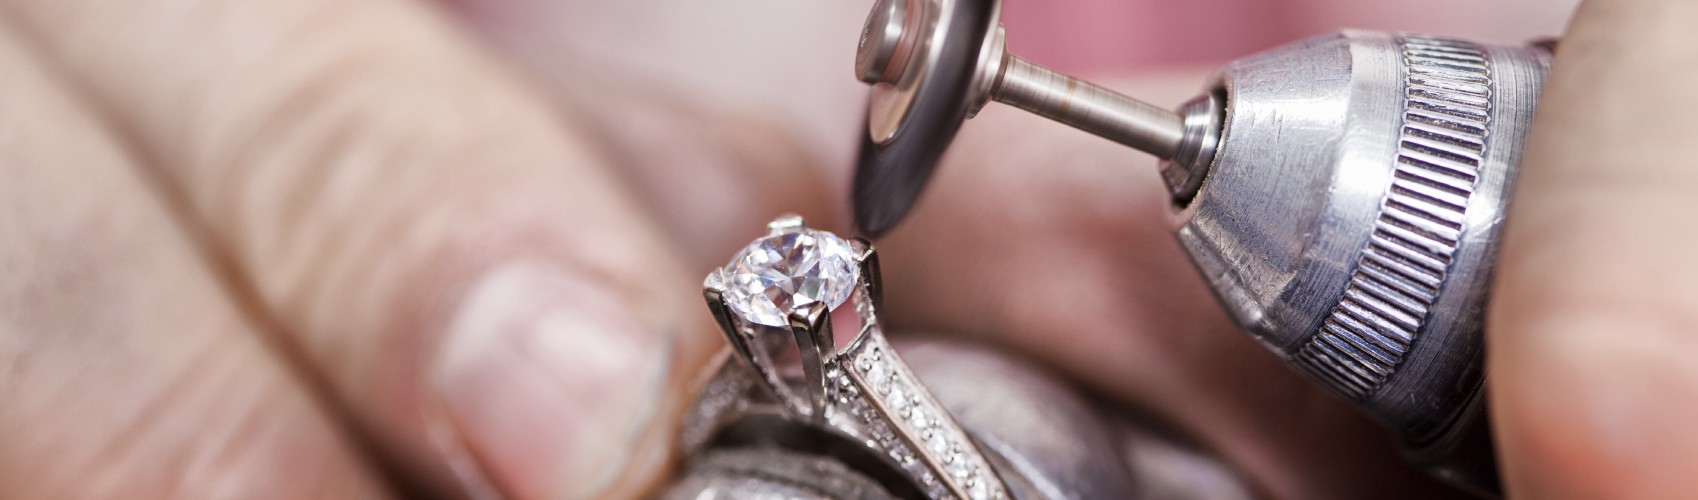 Jewelry Repair Services in Los Altos - Diamond Brokers